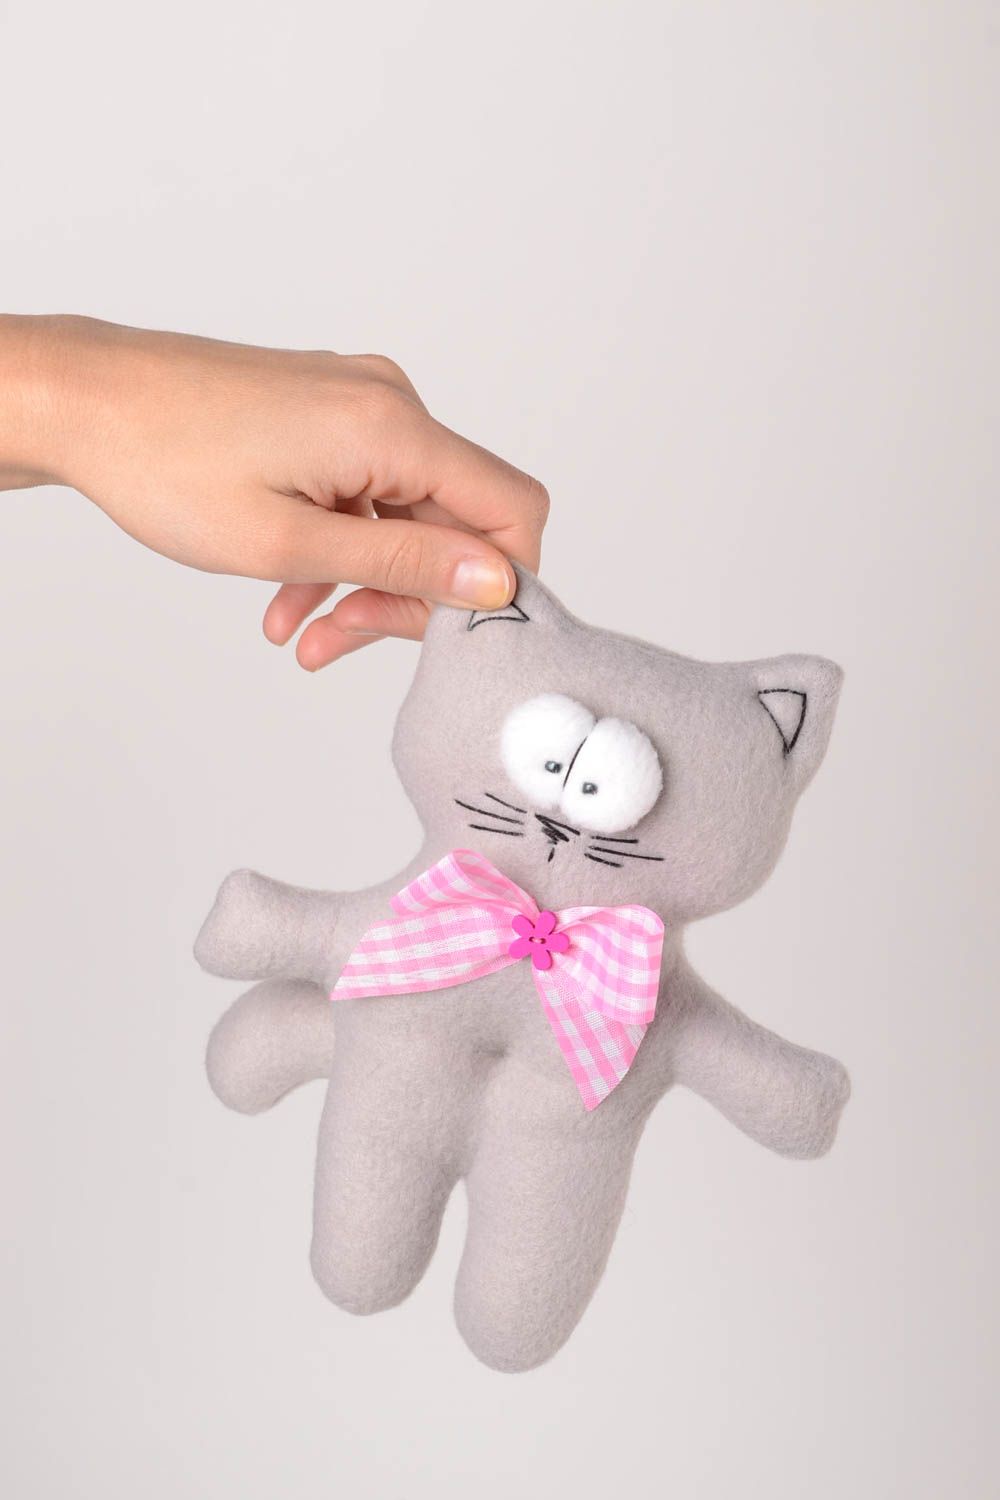 Детская игрушка ручной работы игрушка из флиса мягкая игрушка серый кот с бантом фото 2